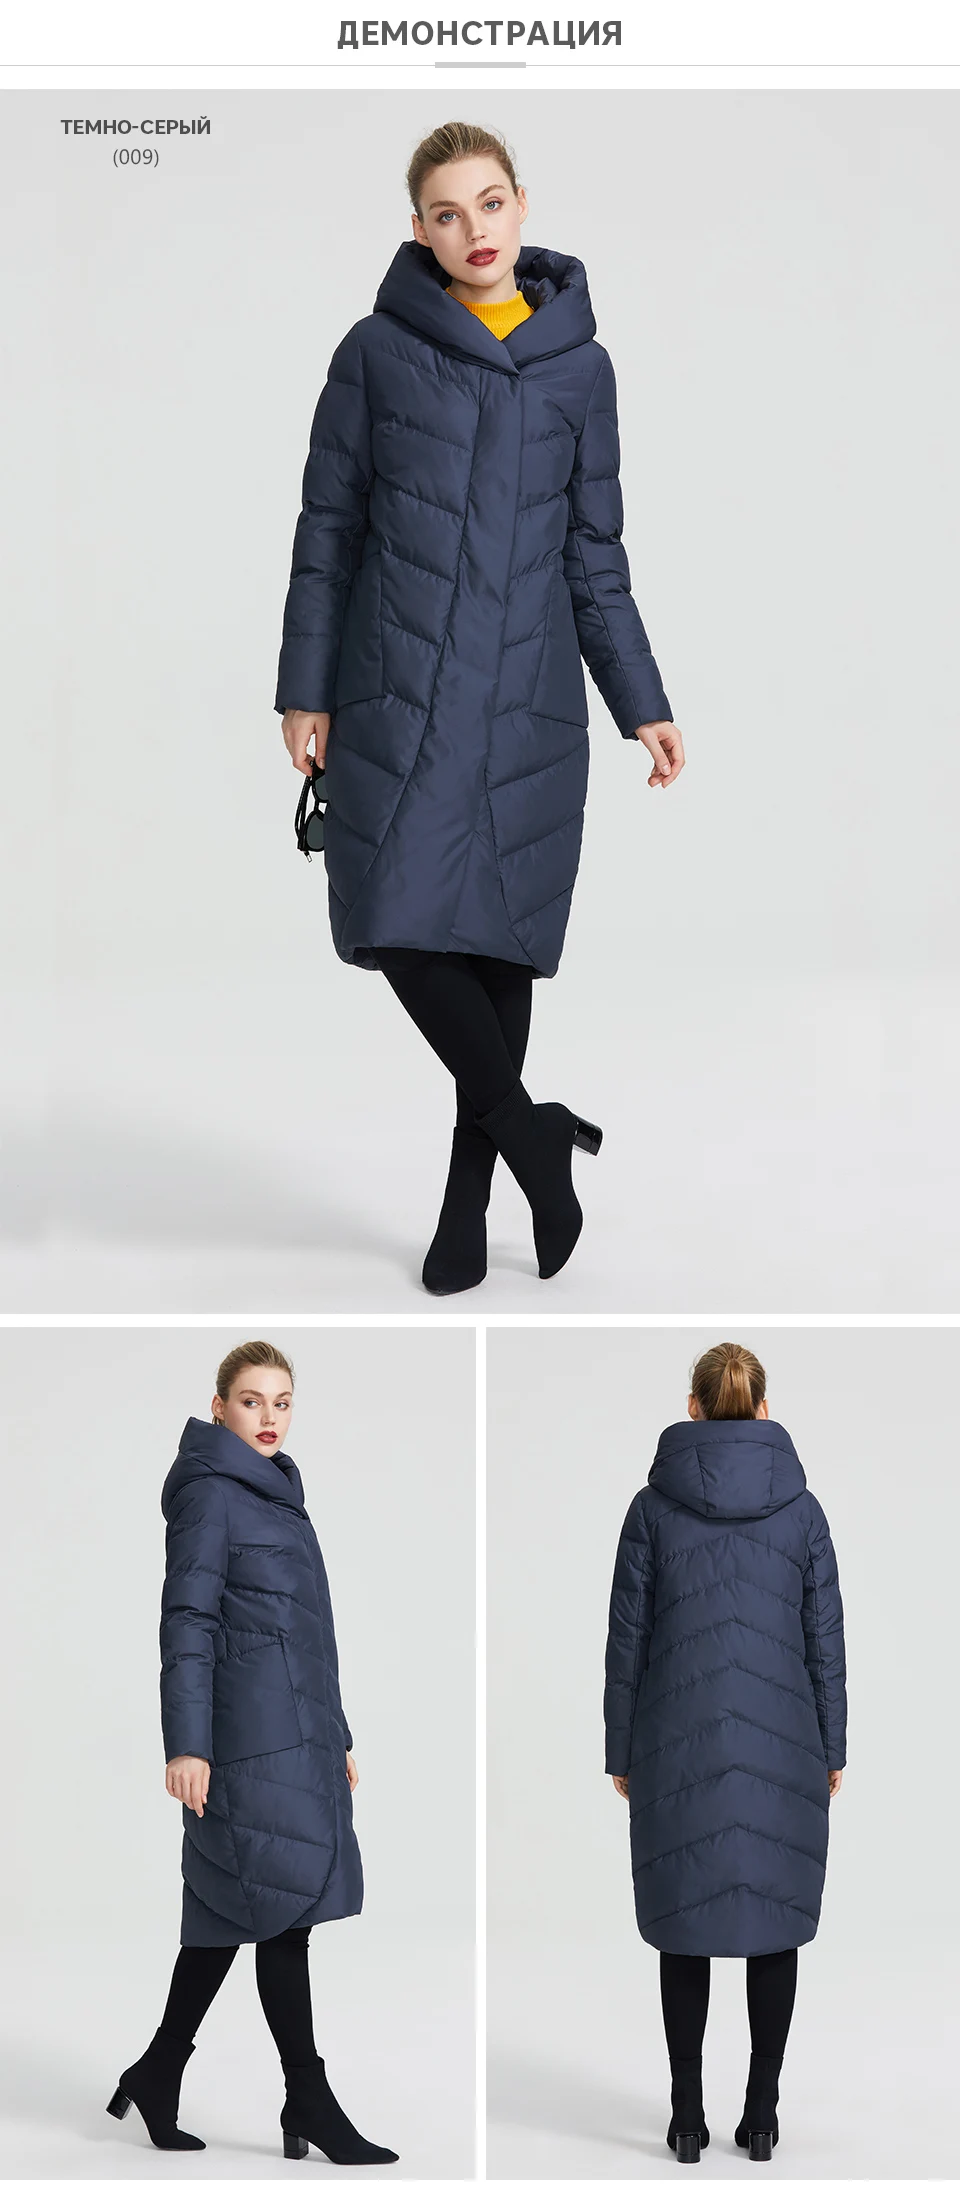 MIEGOFCE 2019 Новая зимняя женская коллекция года зимняя женская куртка имеет имеет V-образный воротник с капюшоном который защитит от холода